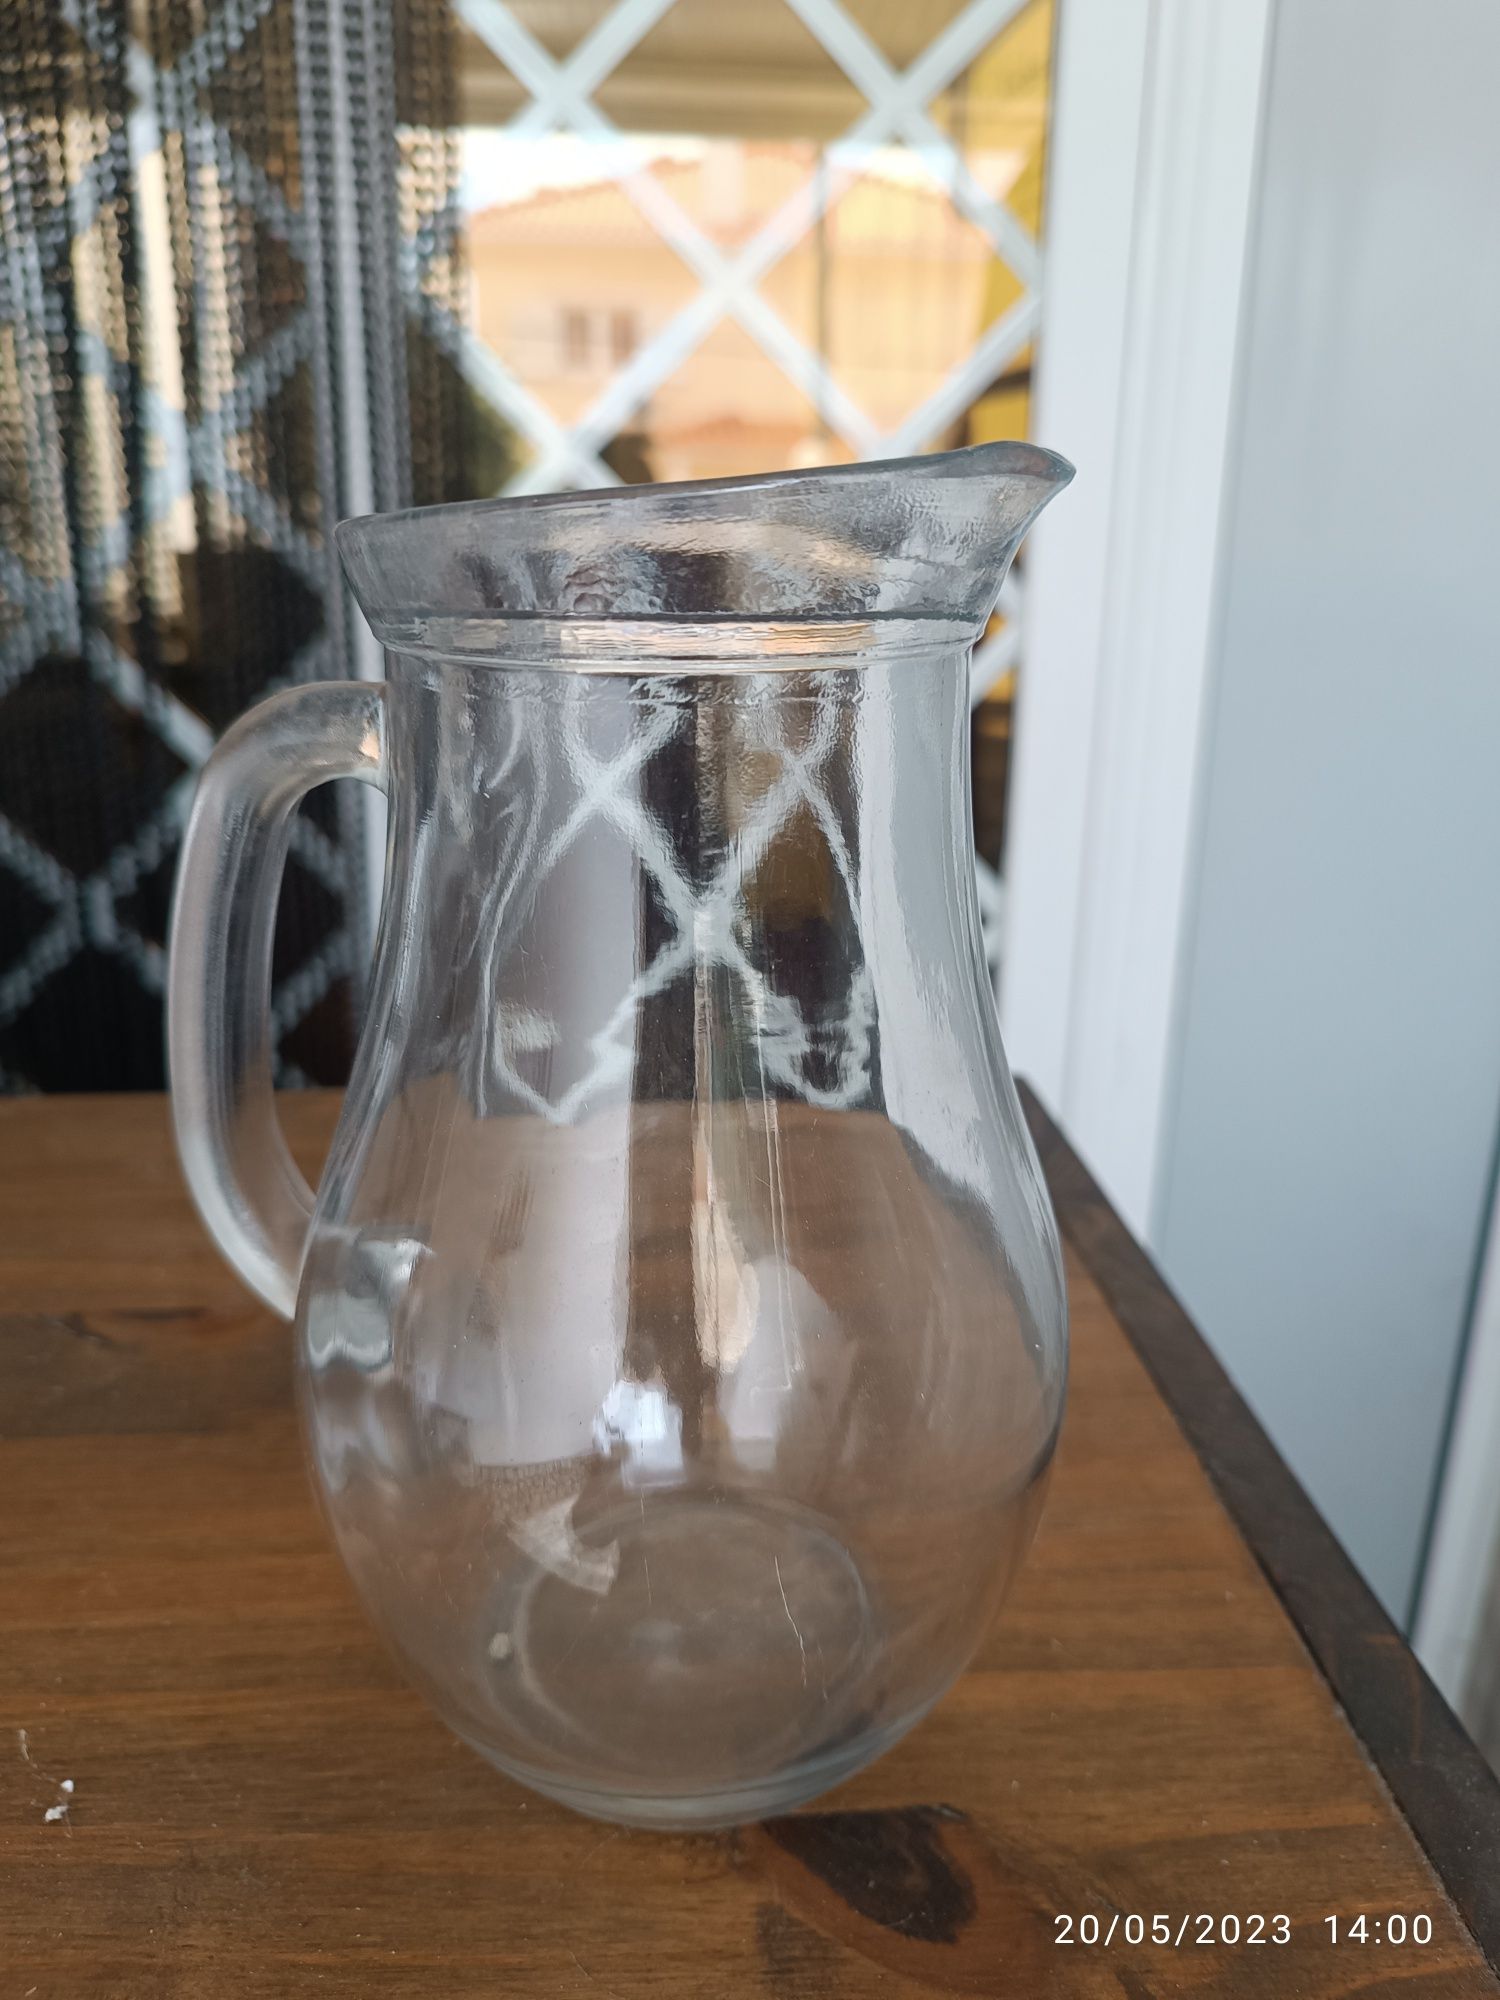 4 jarros de vidro de 1 litro novos